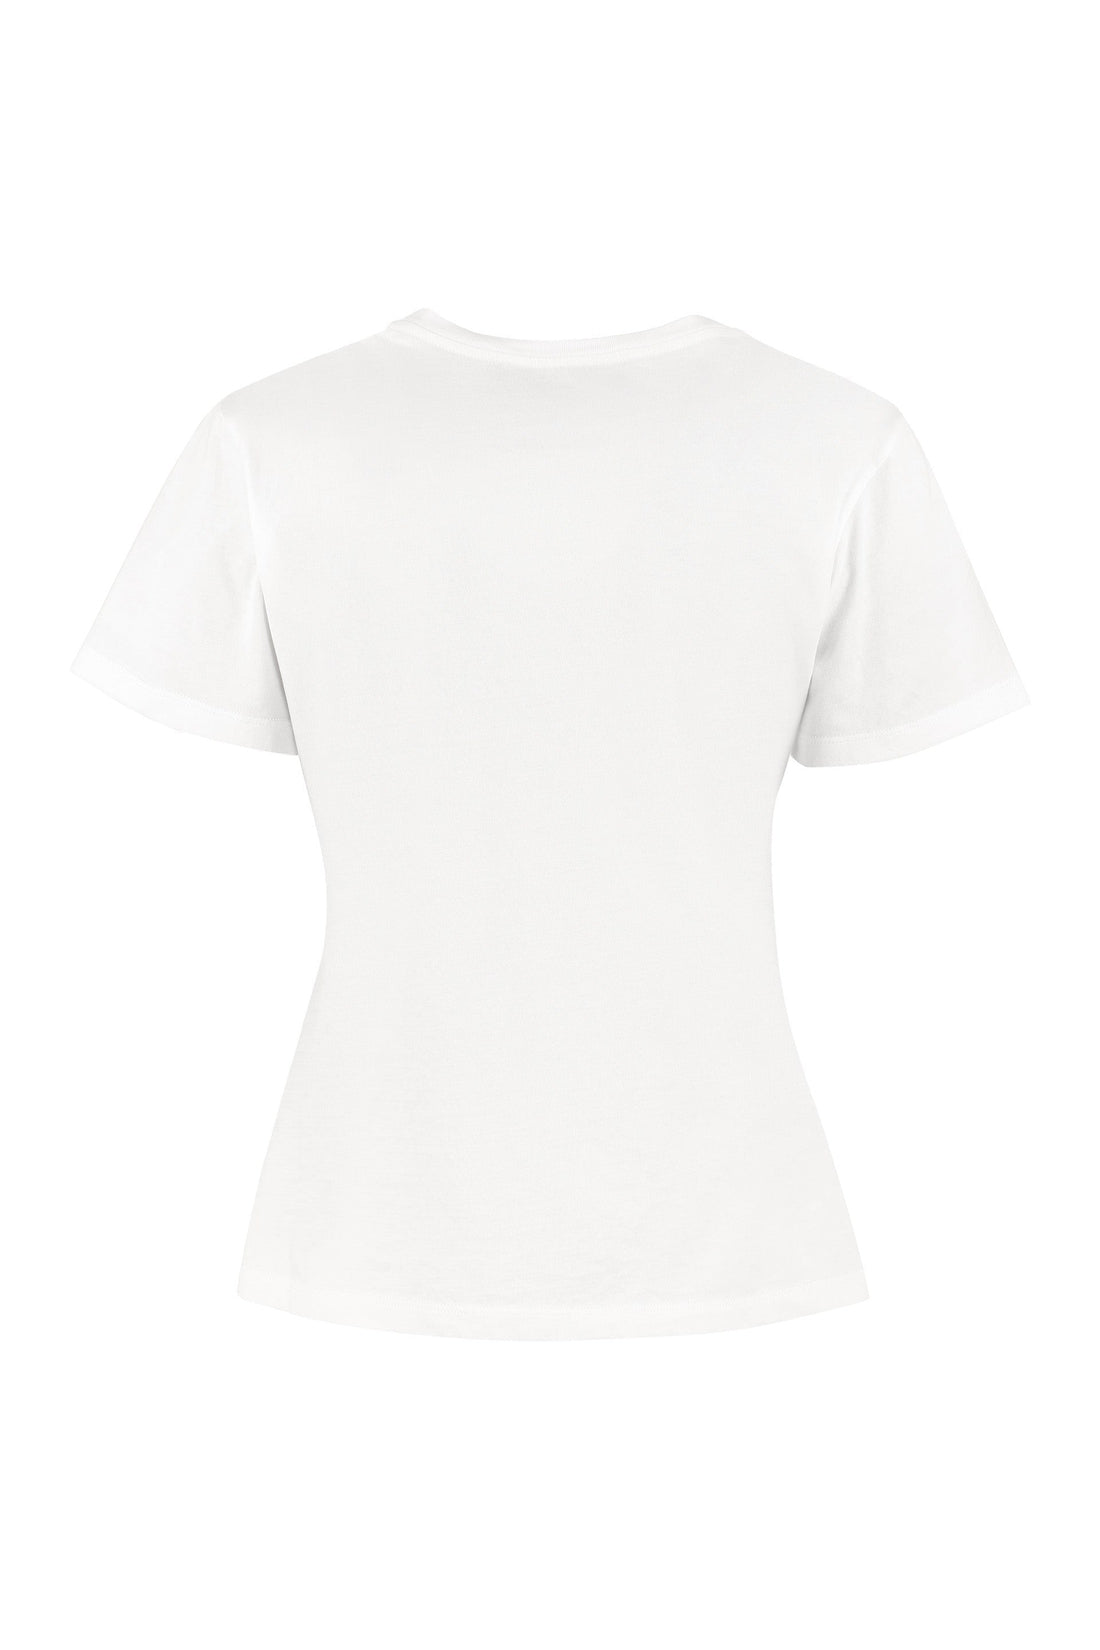 Golden Goose-OUTLET-SALE-Ania crew-neck cotton T-shirt-ARCHIVIST